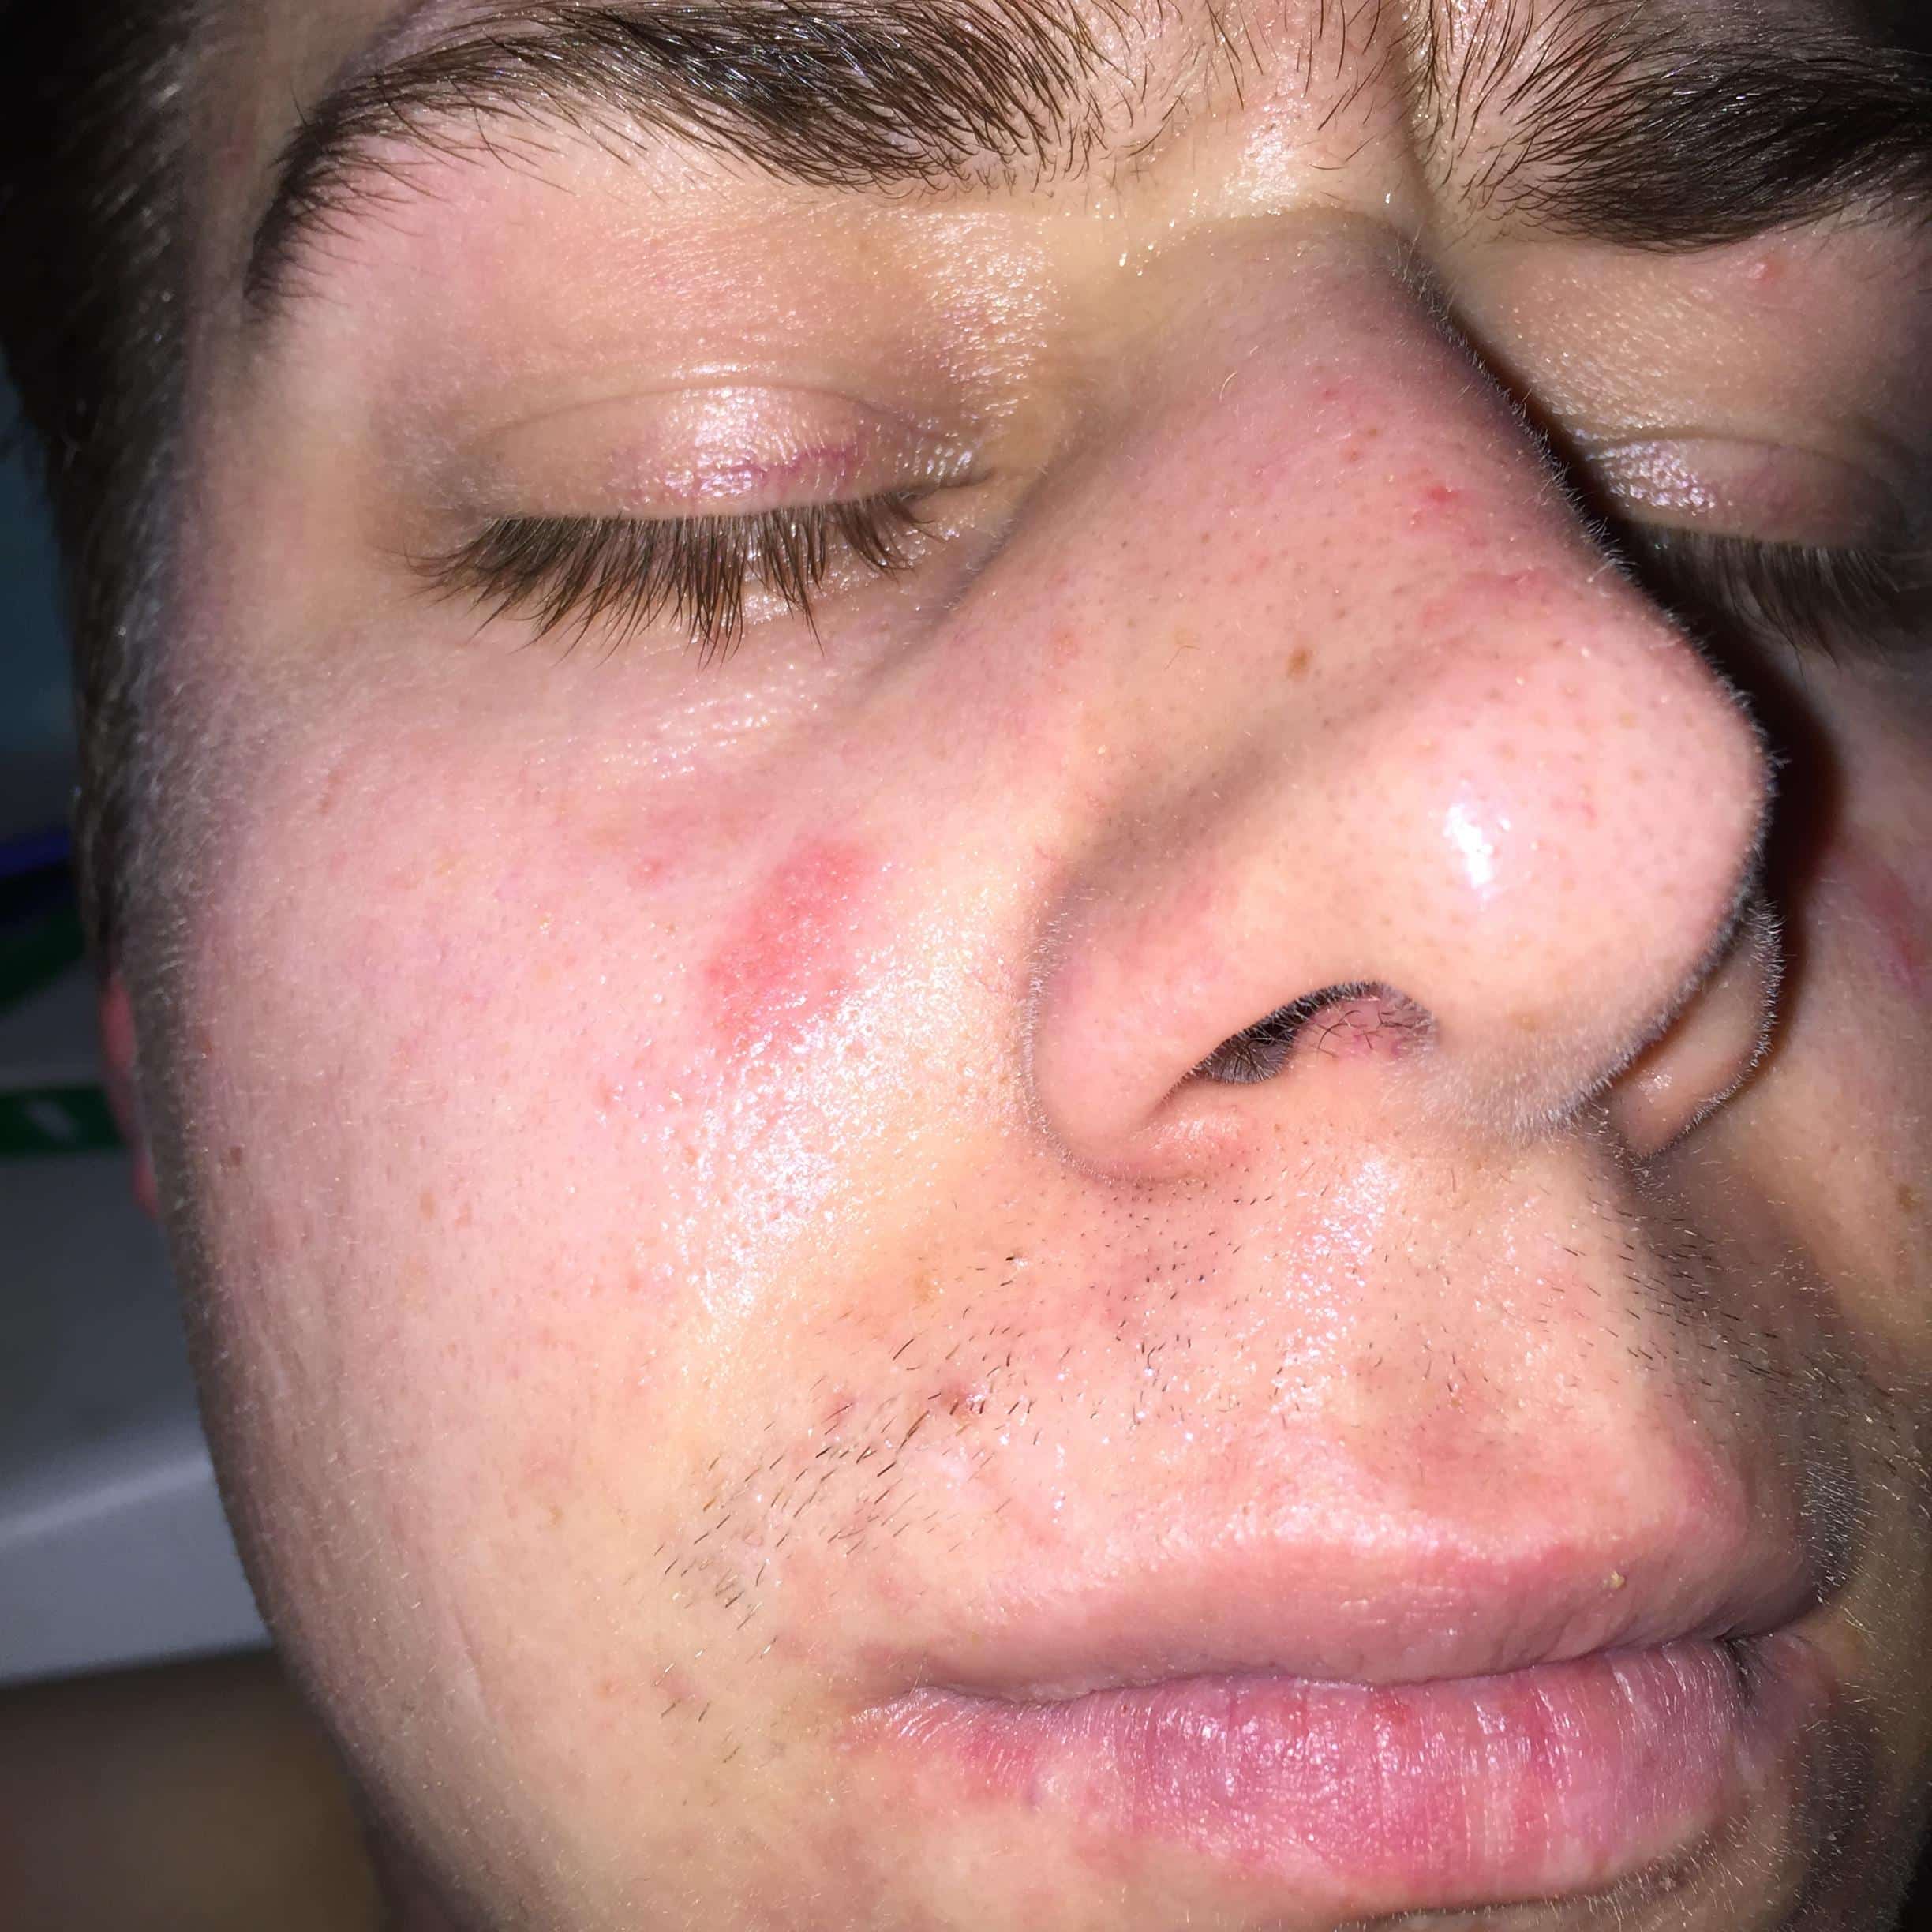 Acne like rash/spots